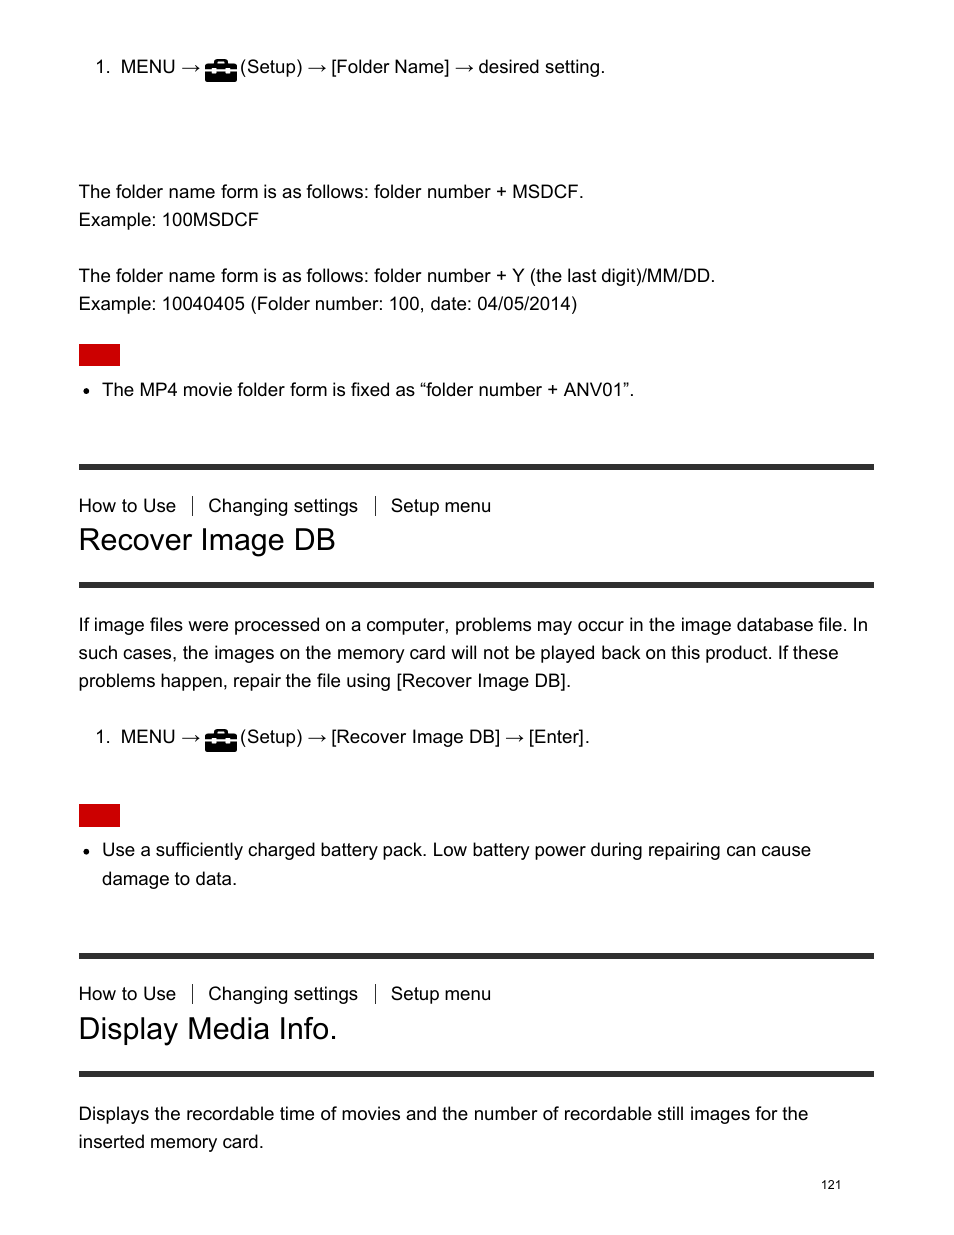 Recover image db, Display media info | Sony DSC-HX400V User Manual